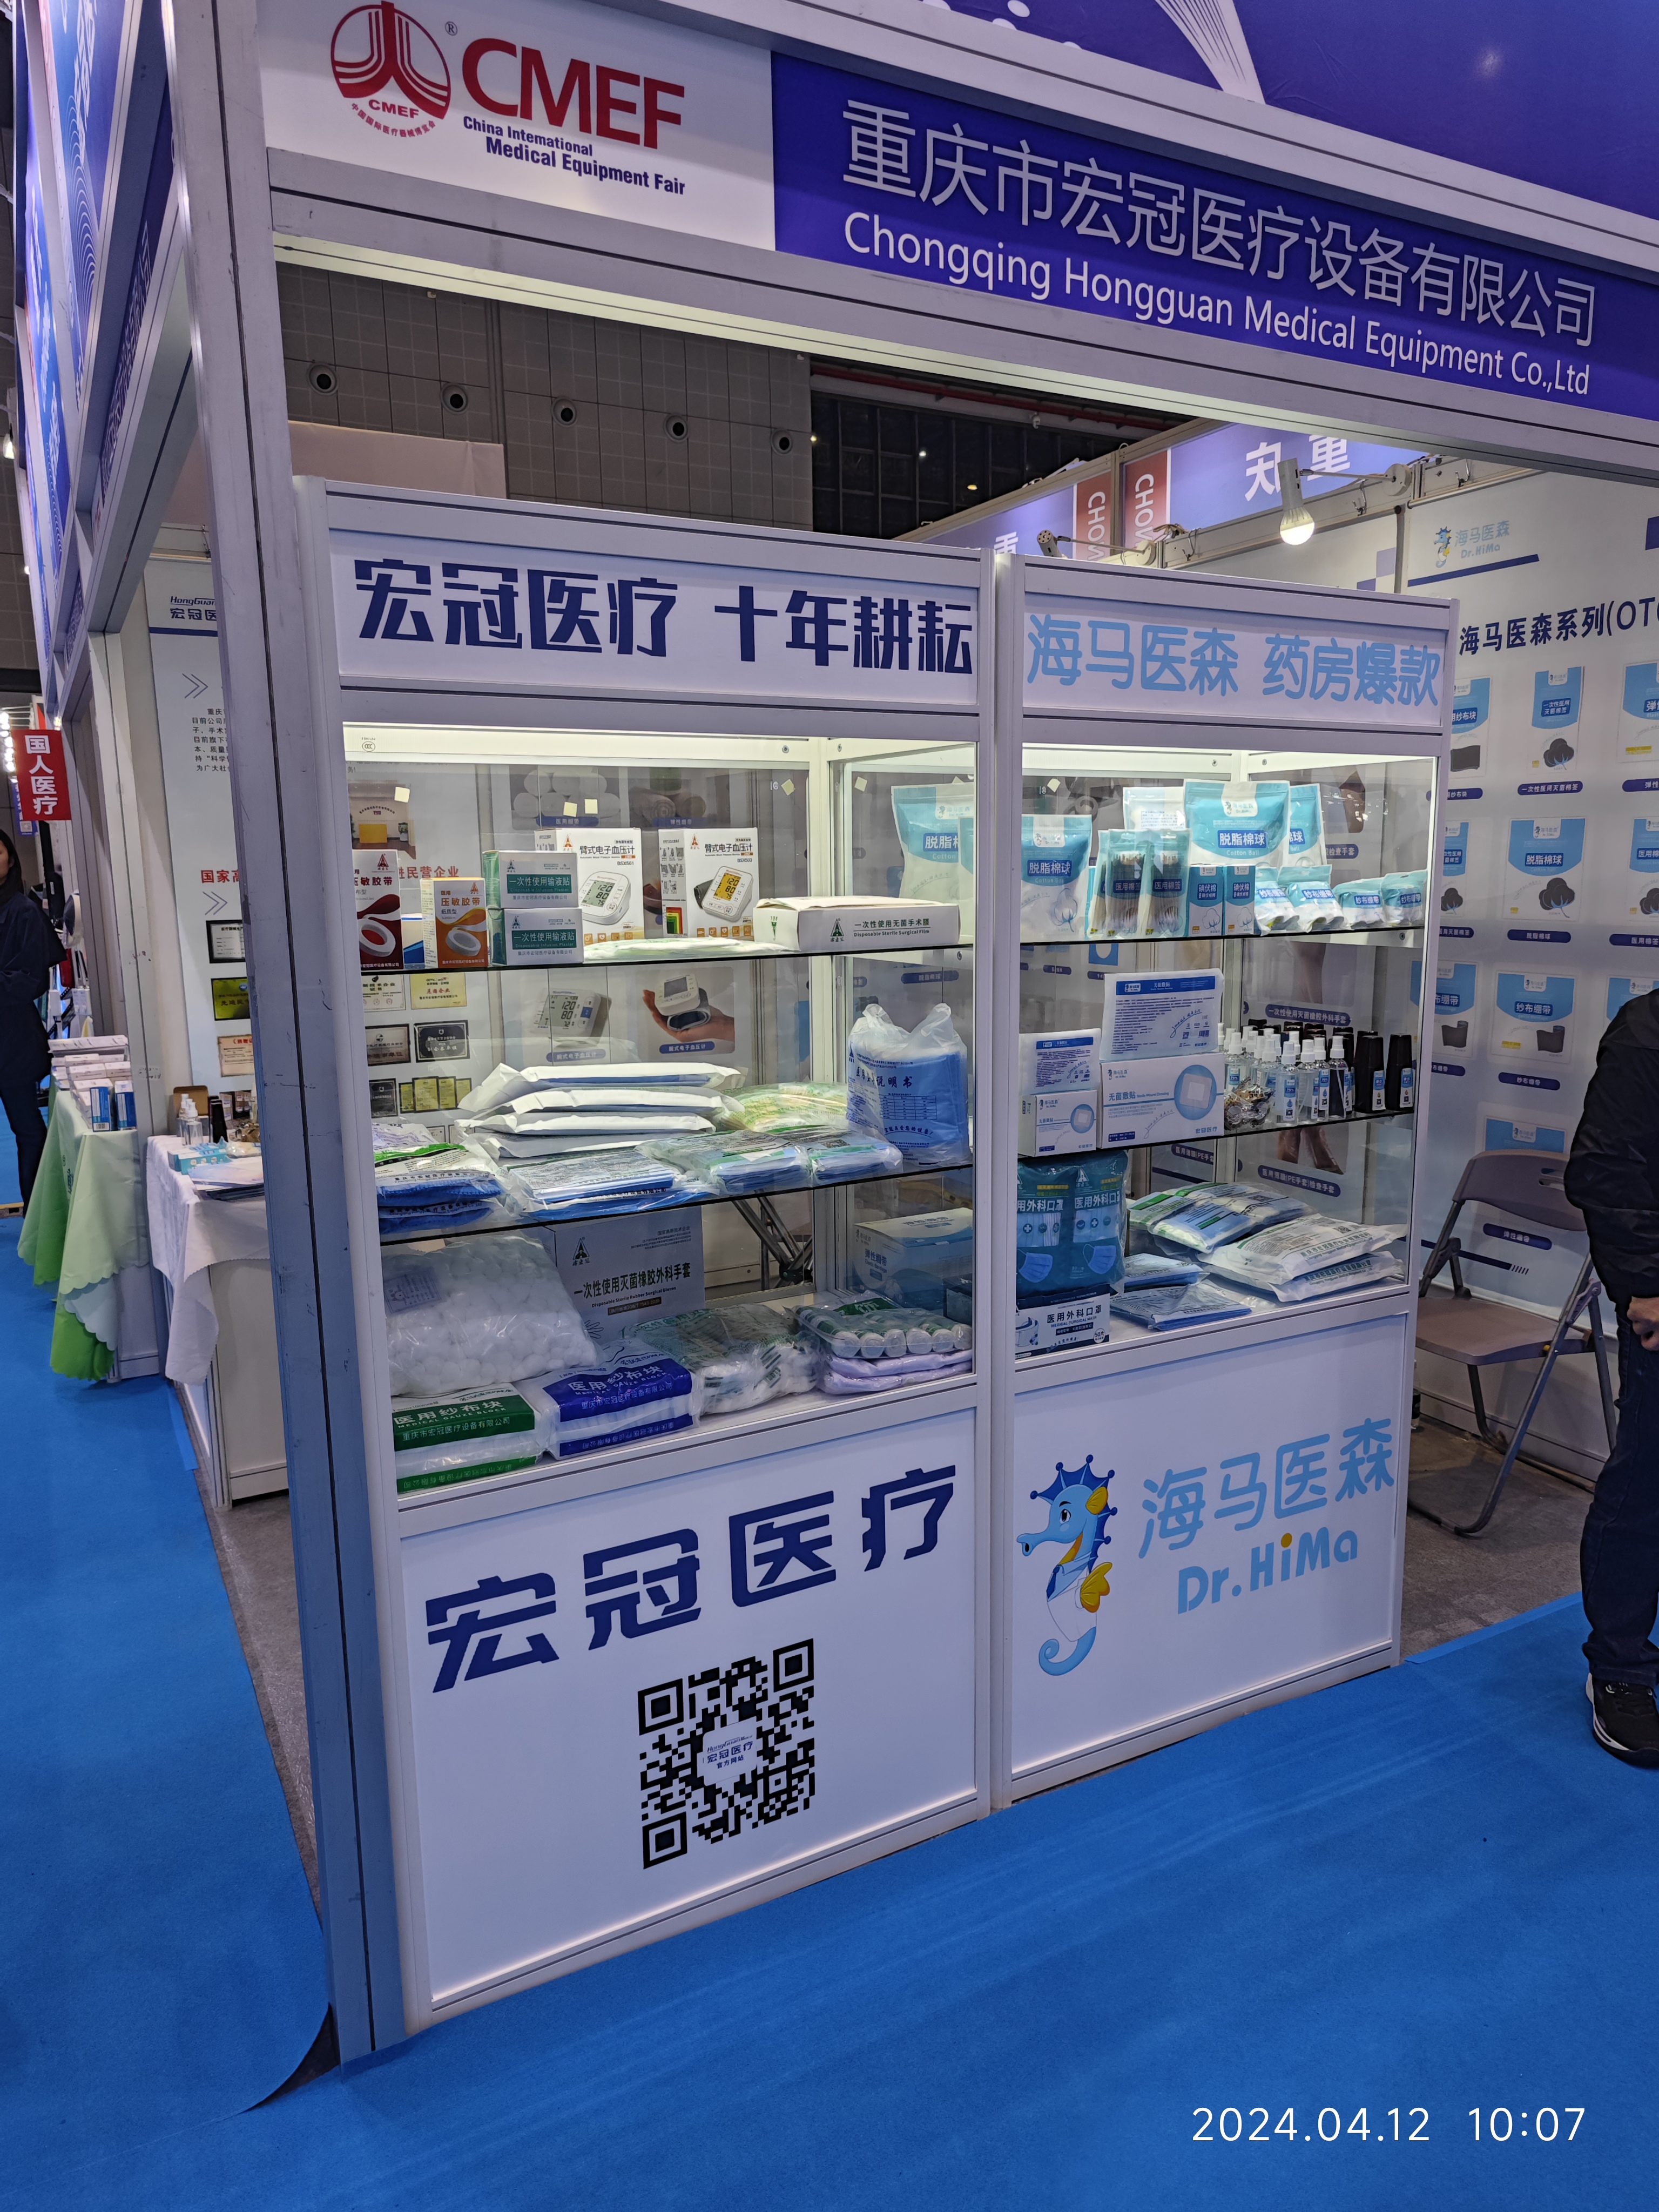 Le 89e Salon international chinois des équipements médicaux (CMEF) se termine avec succès